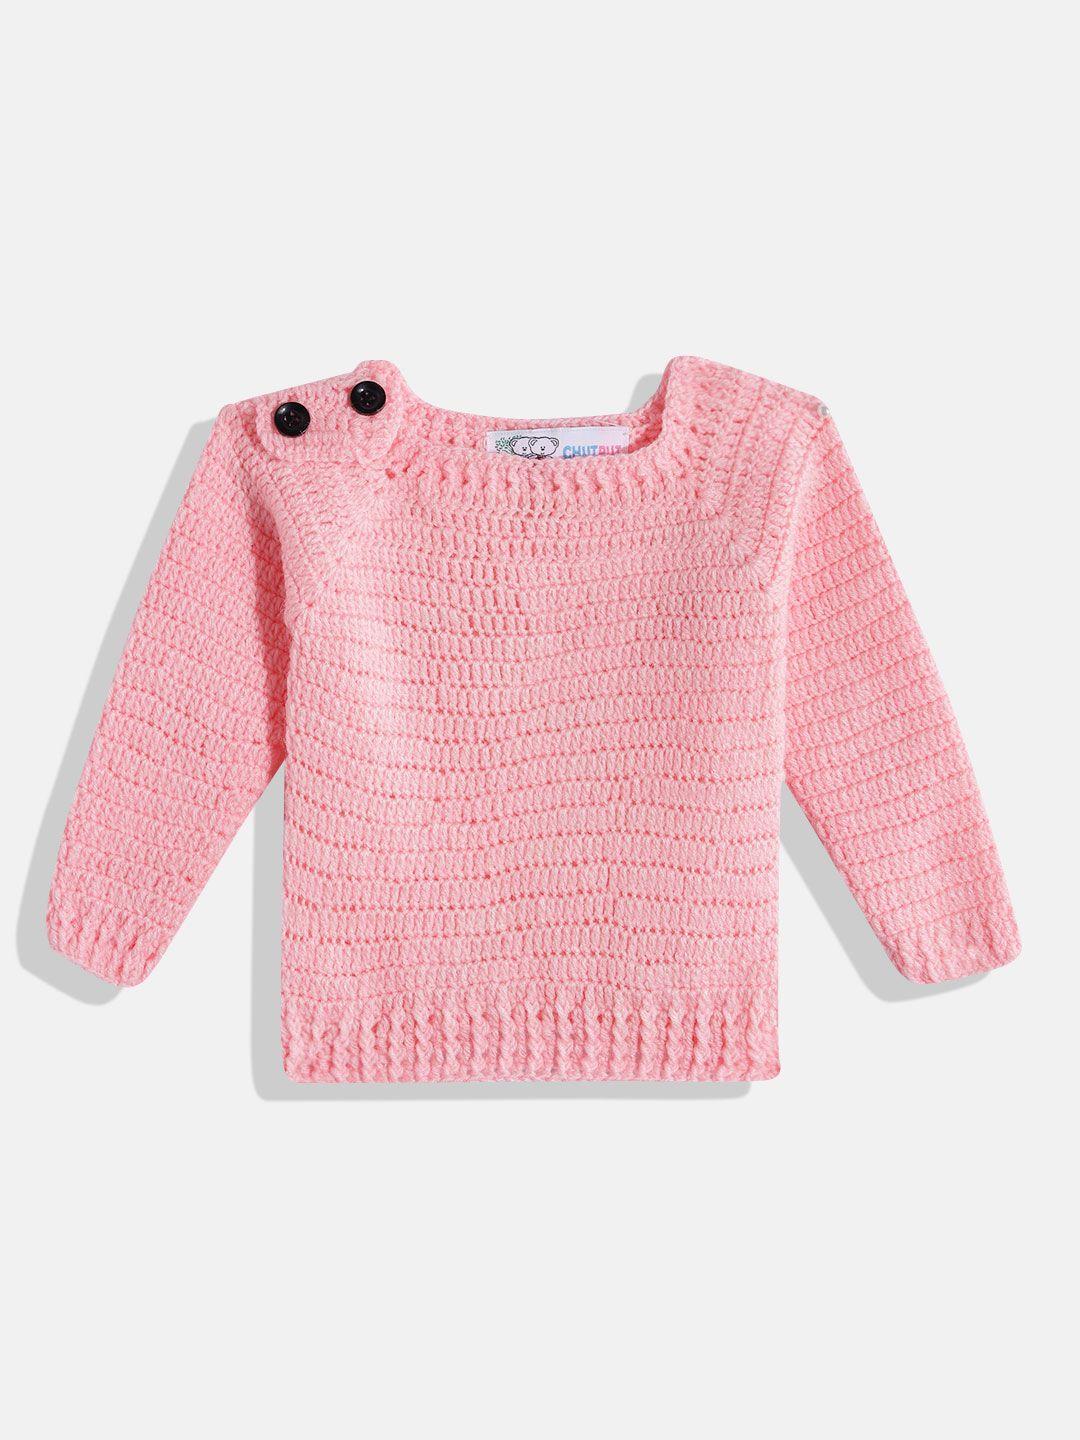 chutput kids crochet woollen pullover